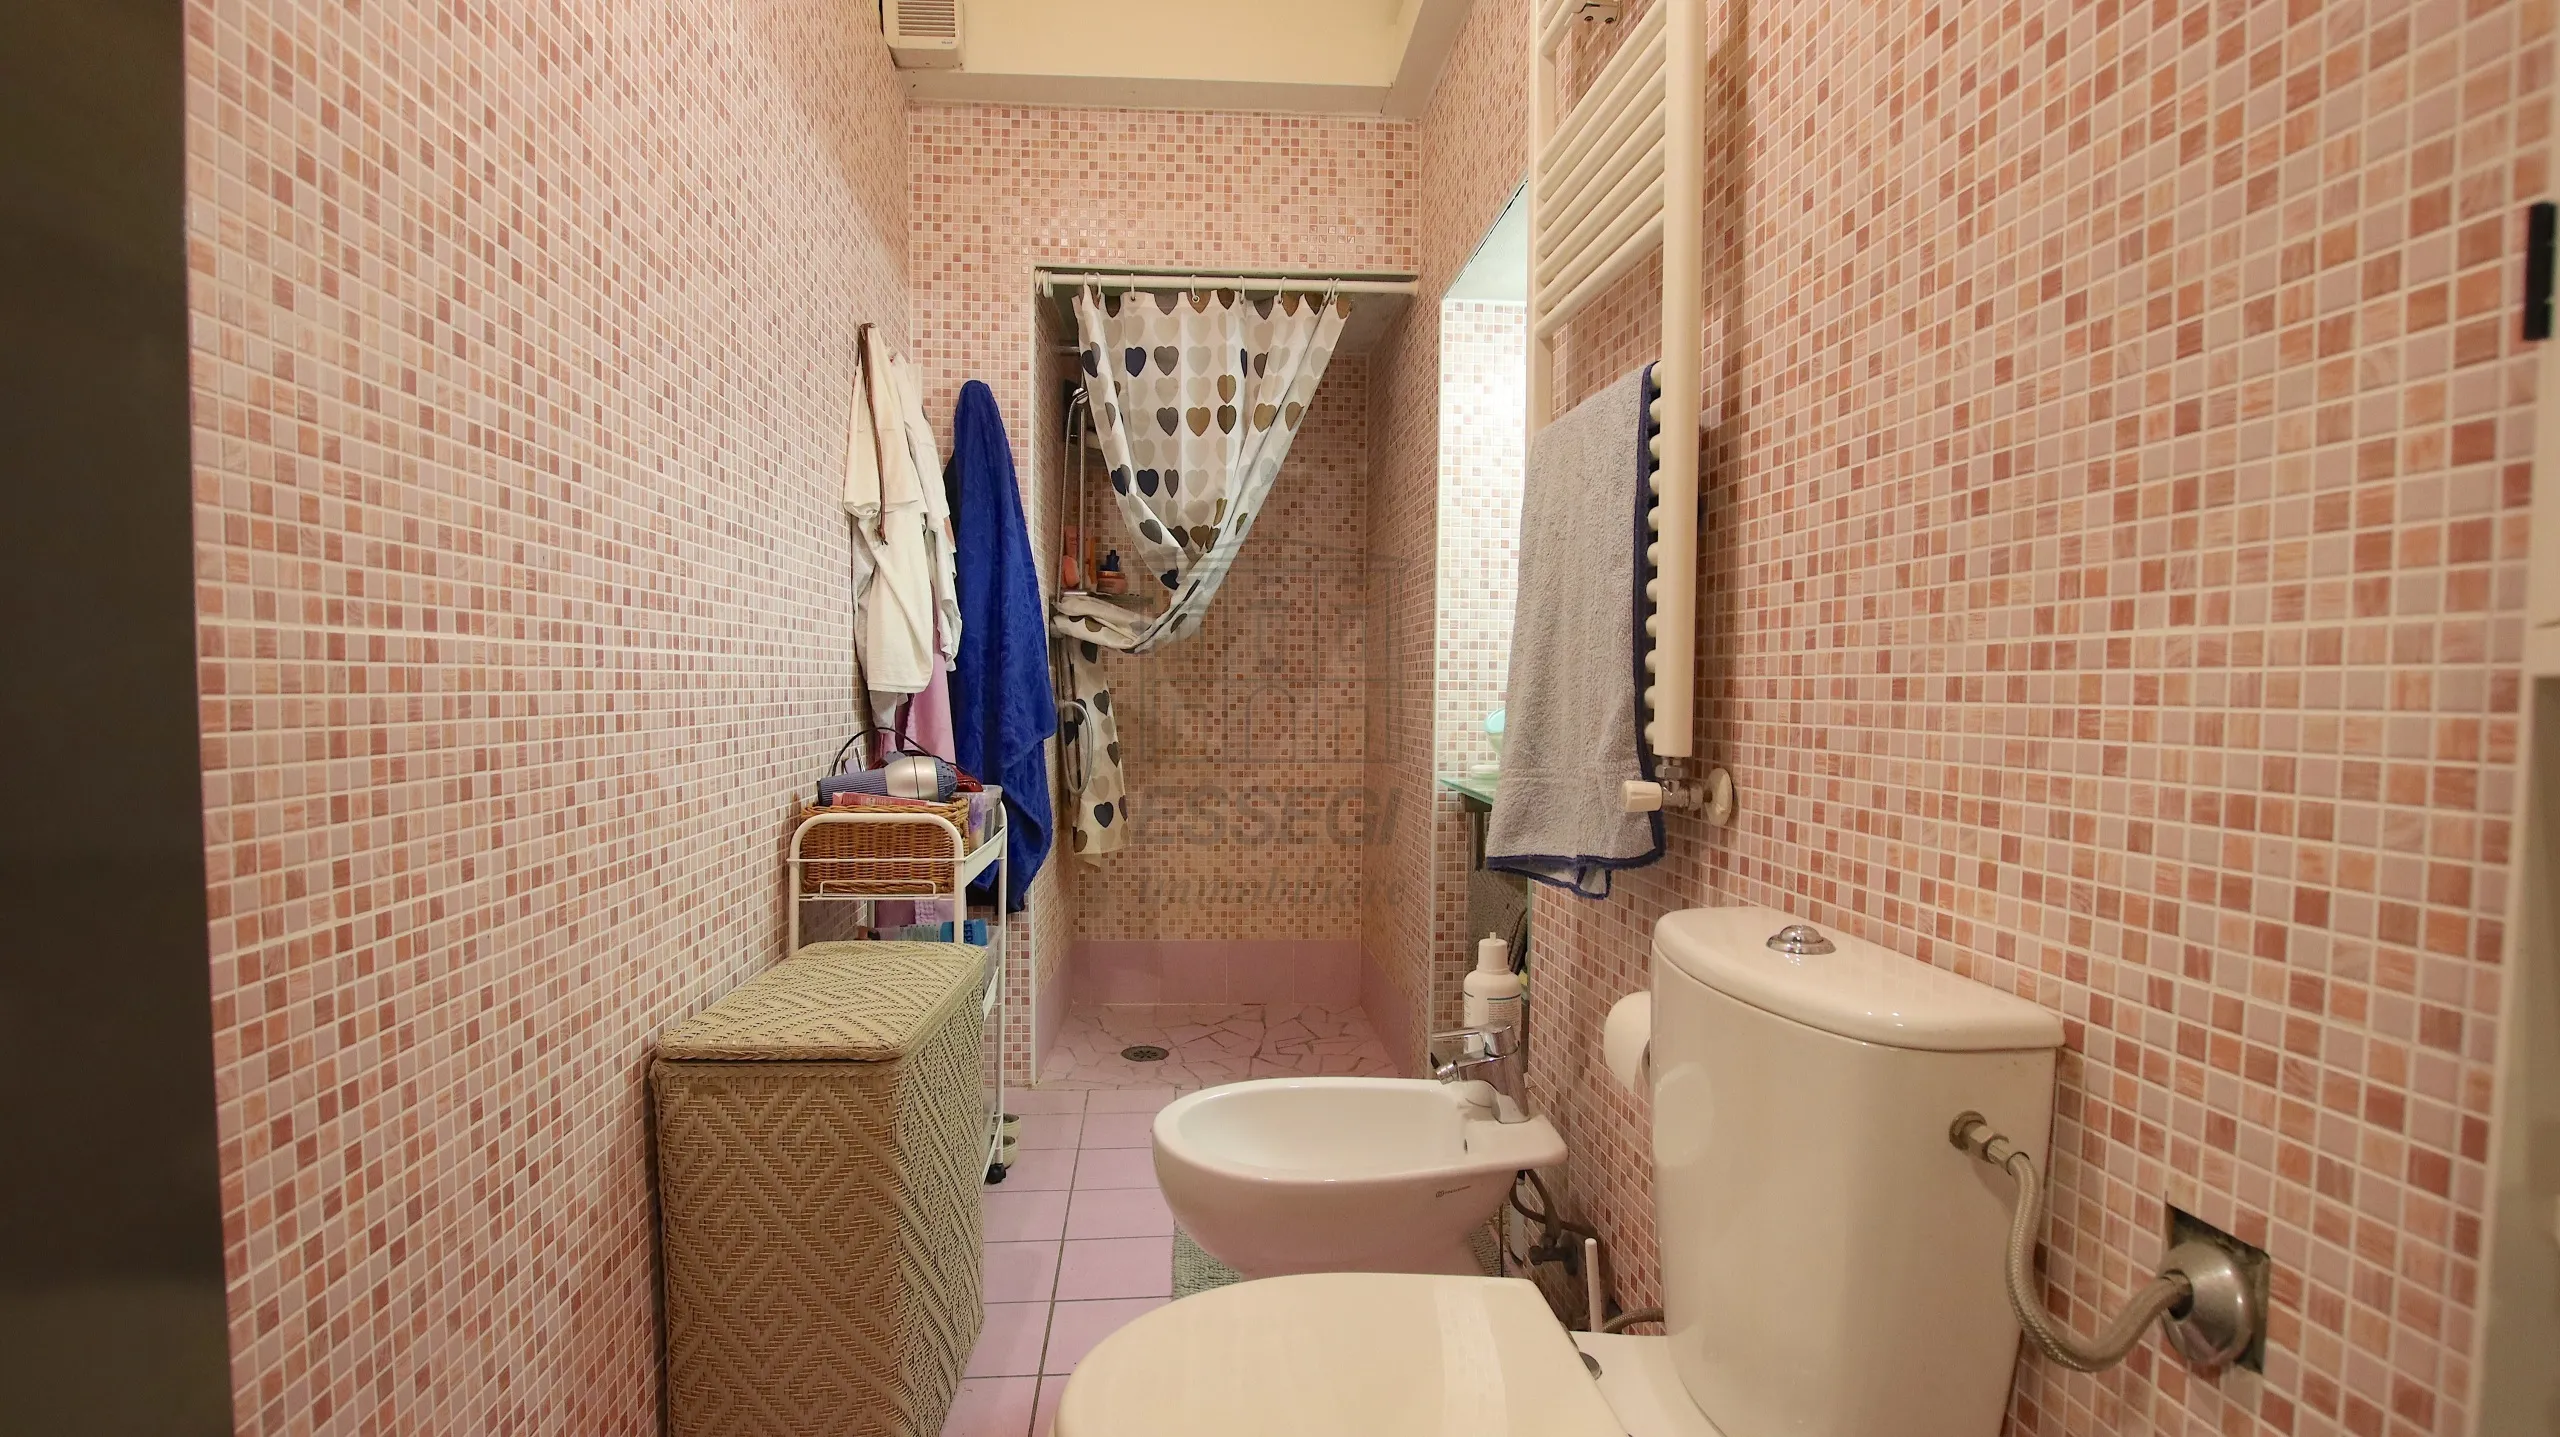 Immagine per Appartamento in vendita a Lucca